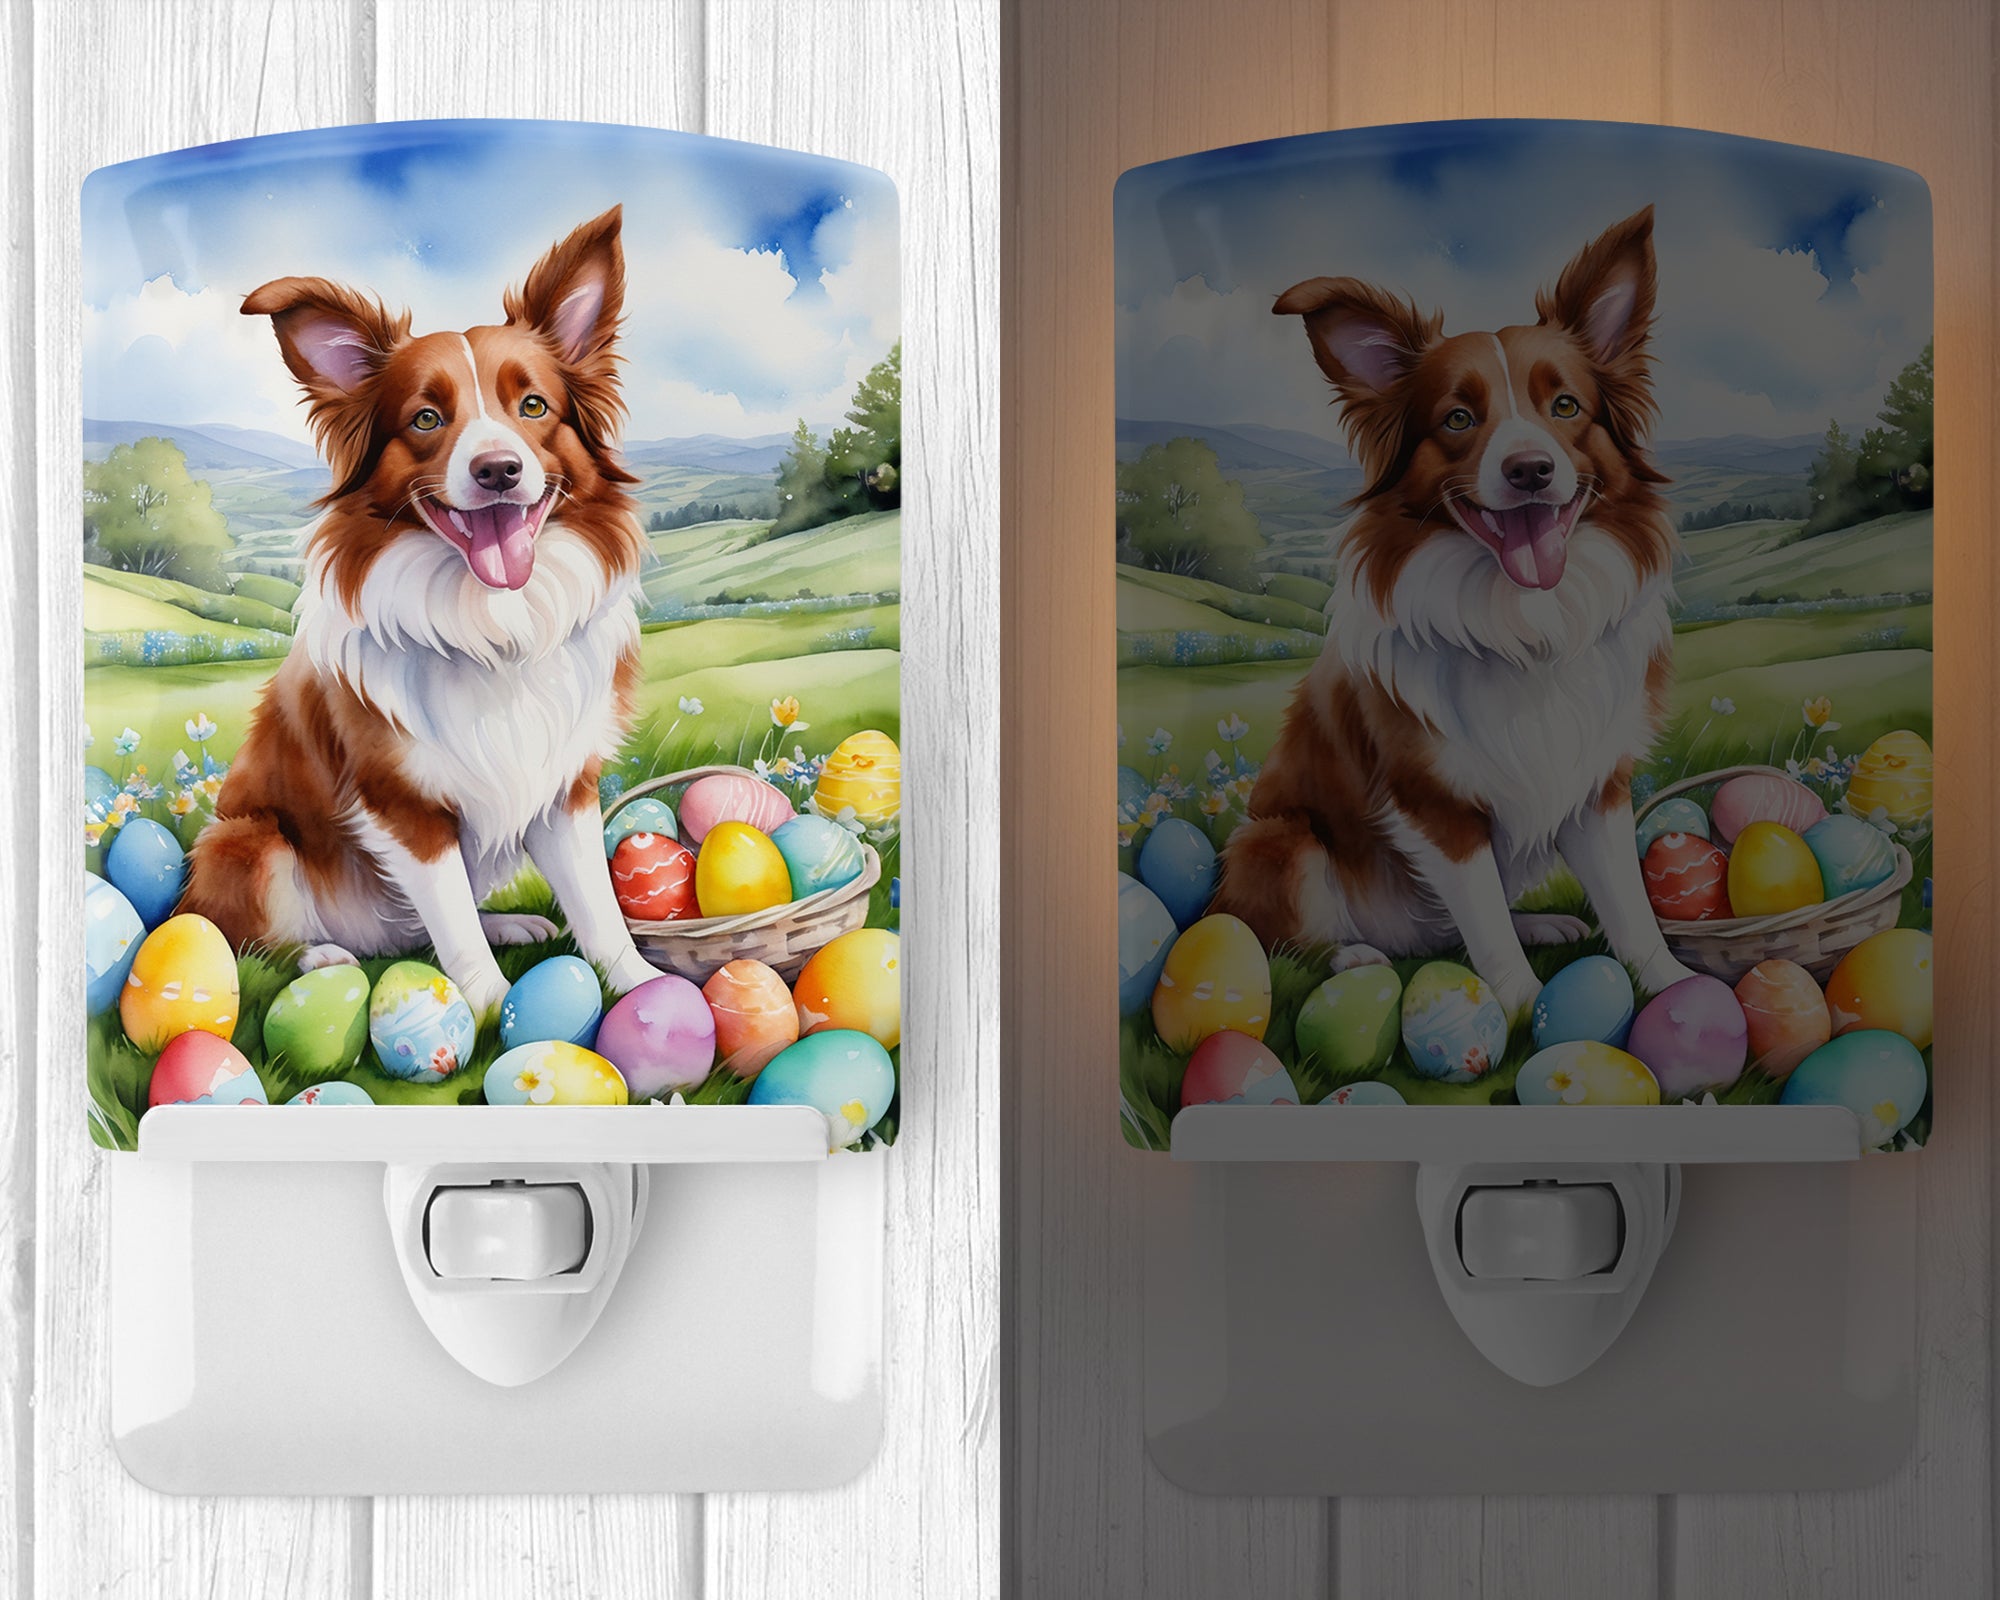 Buy this Border Collie Easter Egg Hunt Ceramic Night Light